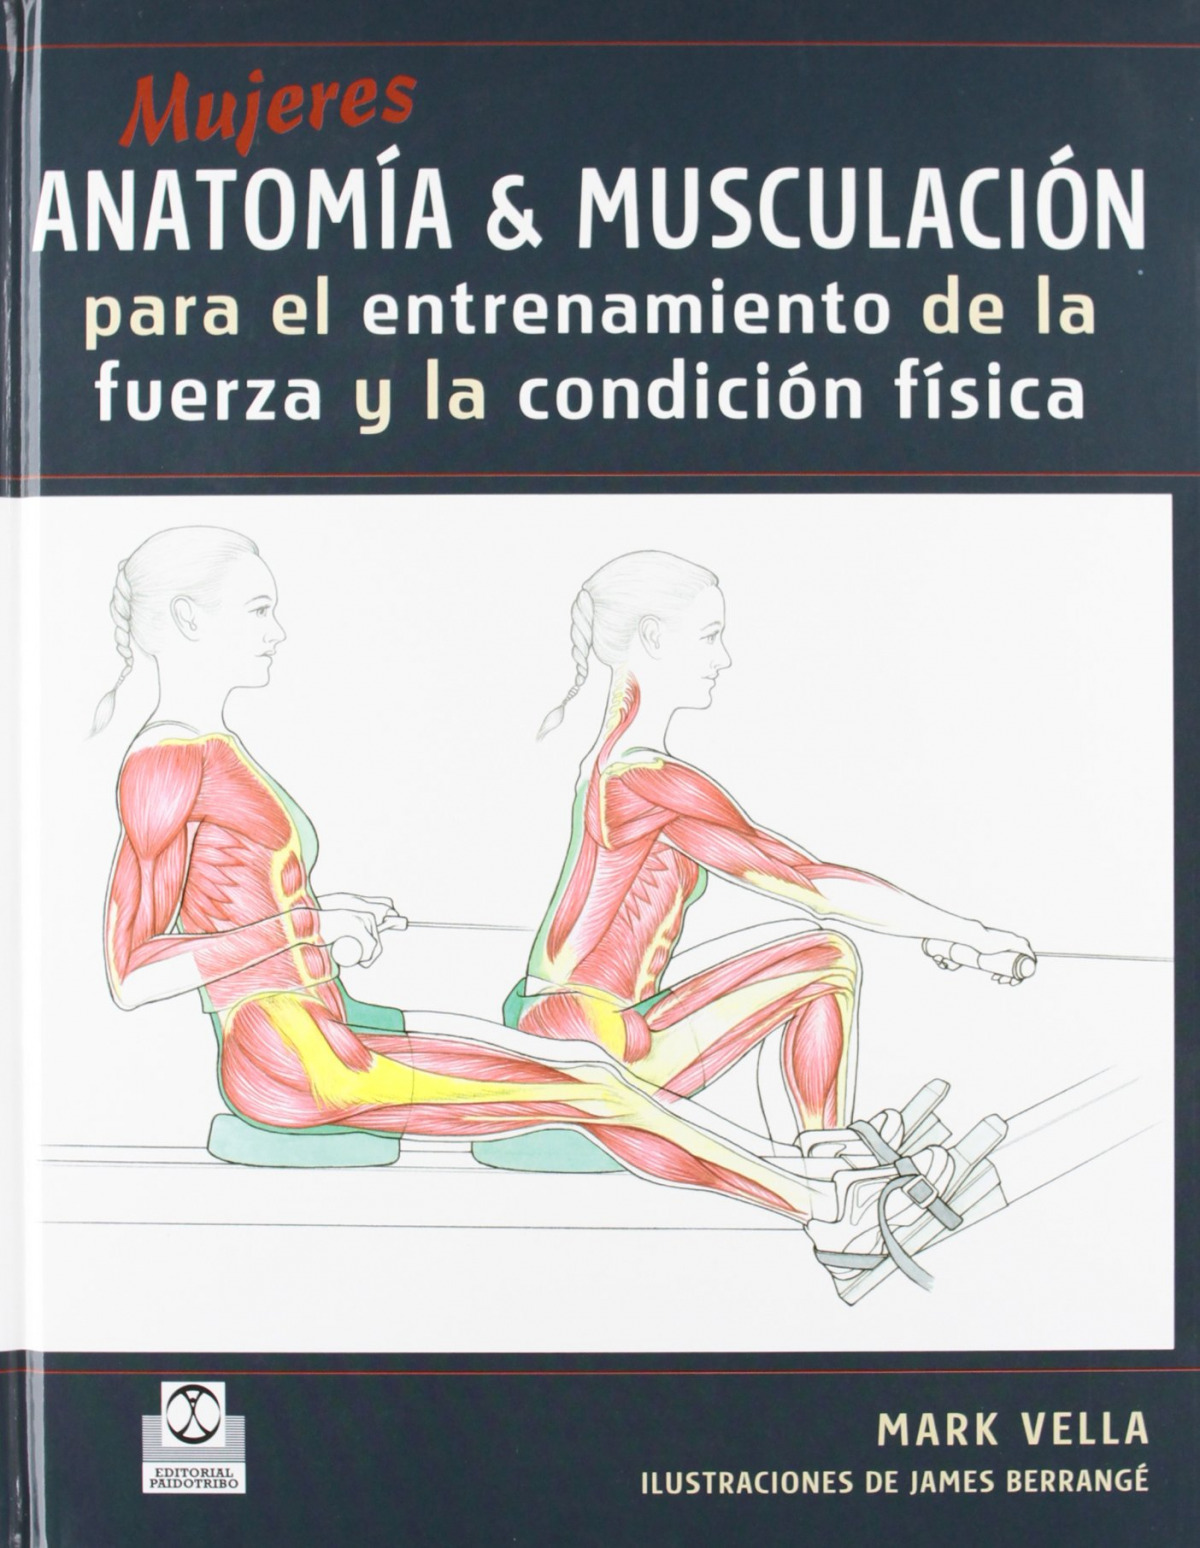 Mujeres anatomia & musculacion de la fuerza y la condicion fisica - Vella, Mark